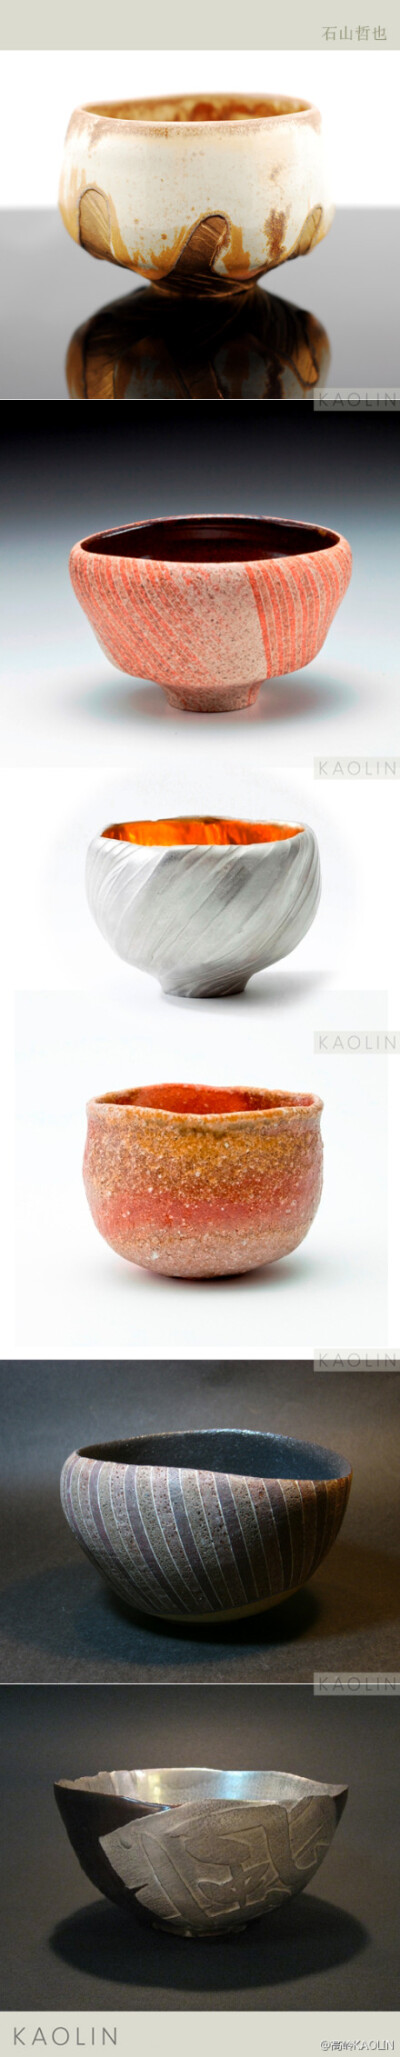 日本艺术家石山哲也tetsuya ishiyama的陶艺作品试图通过不同肌理的